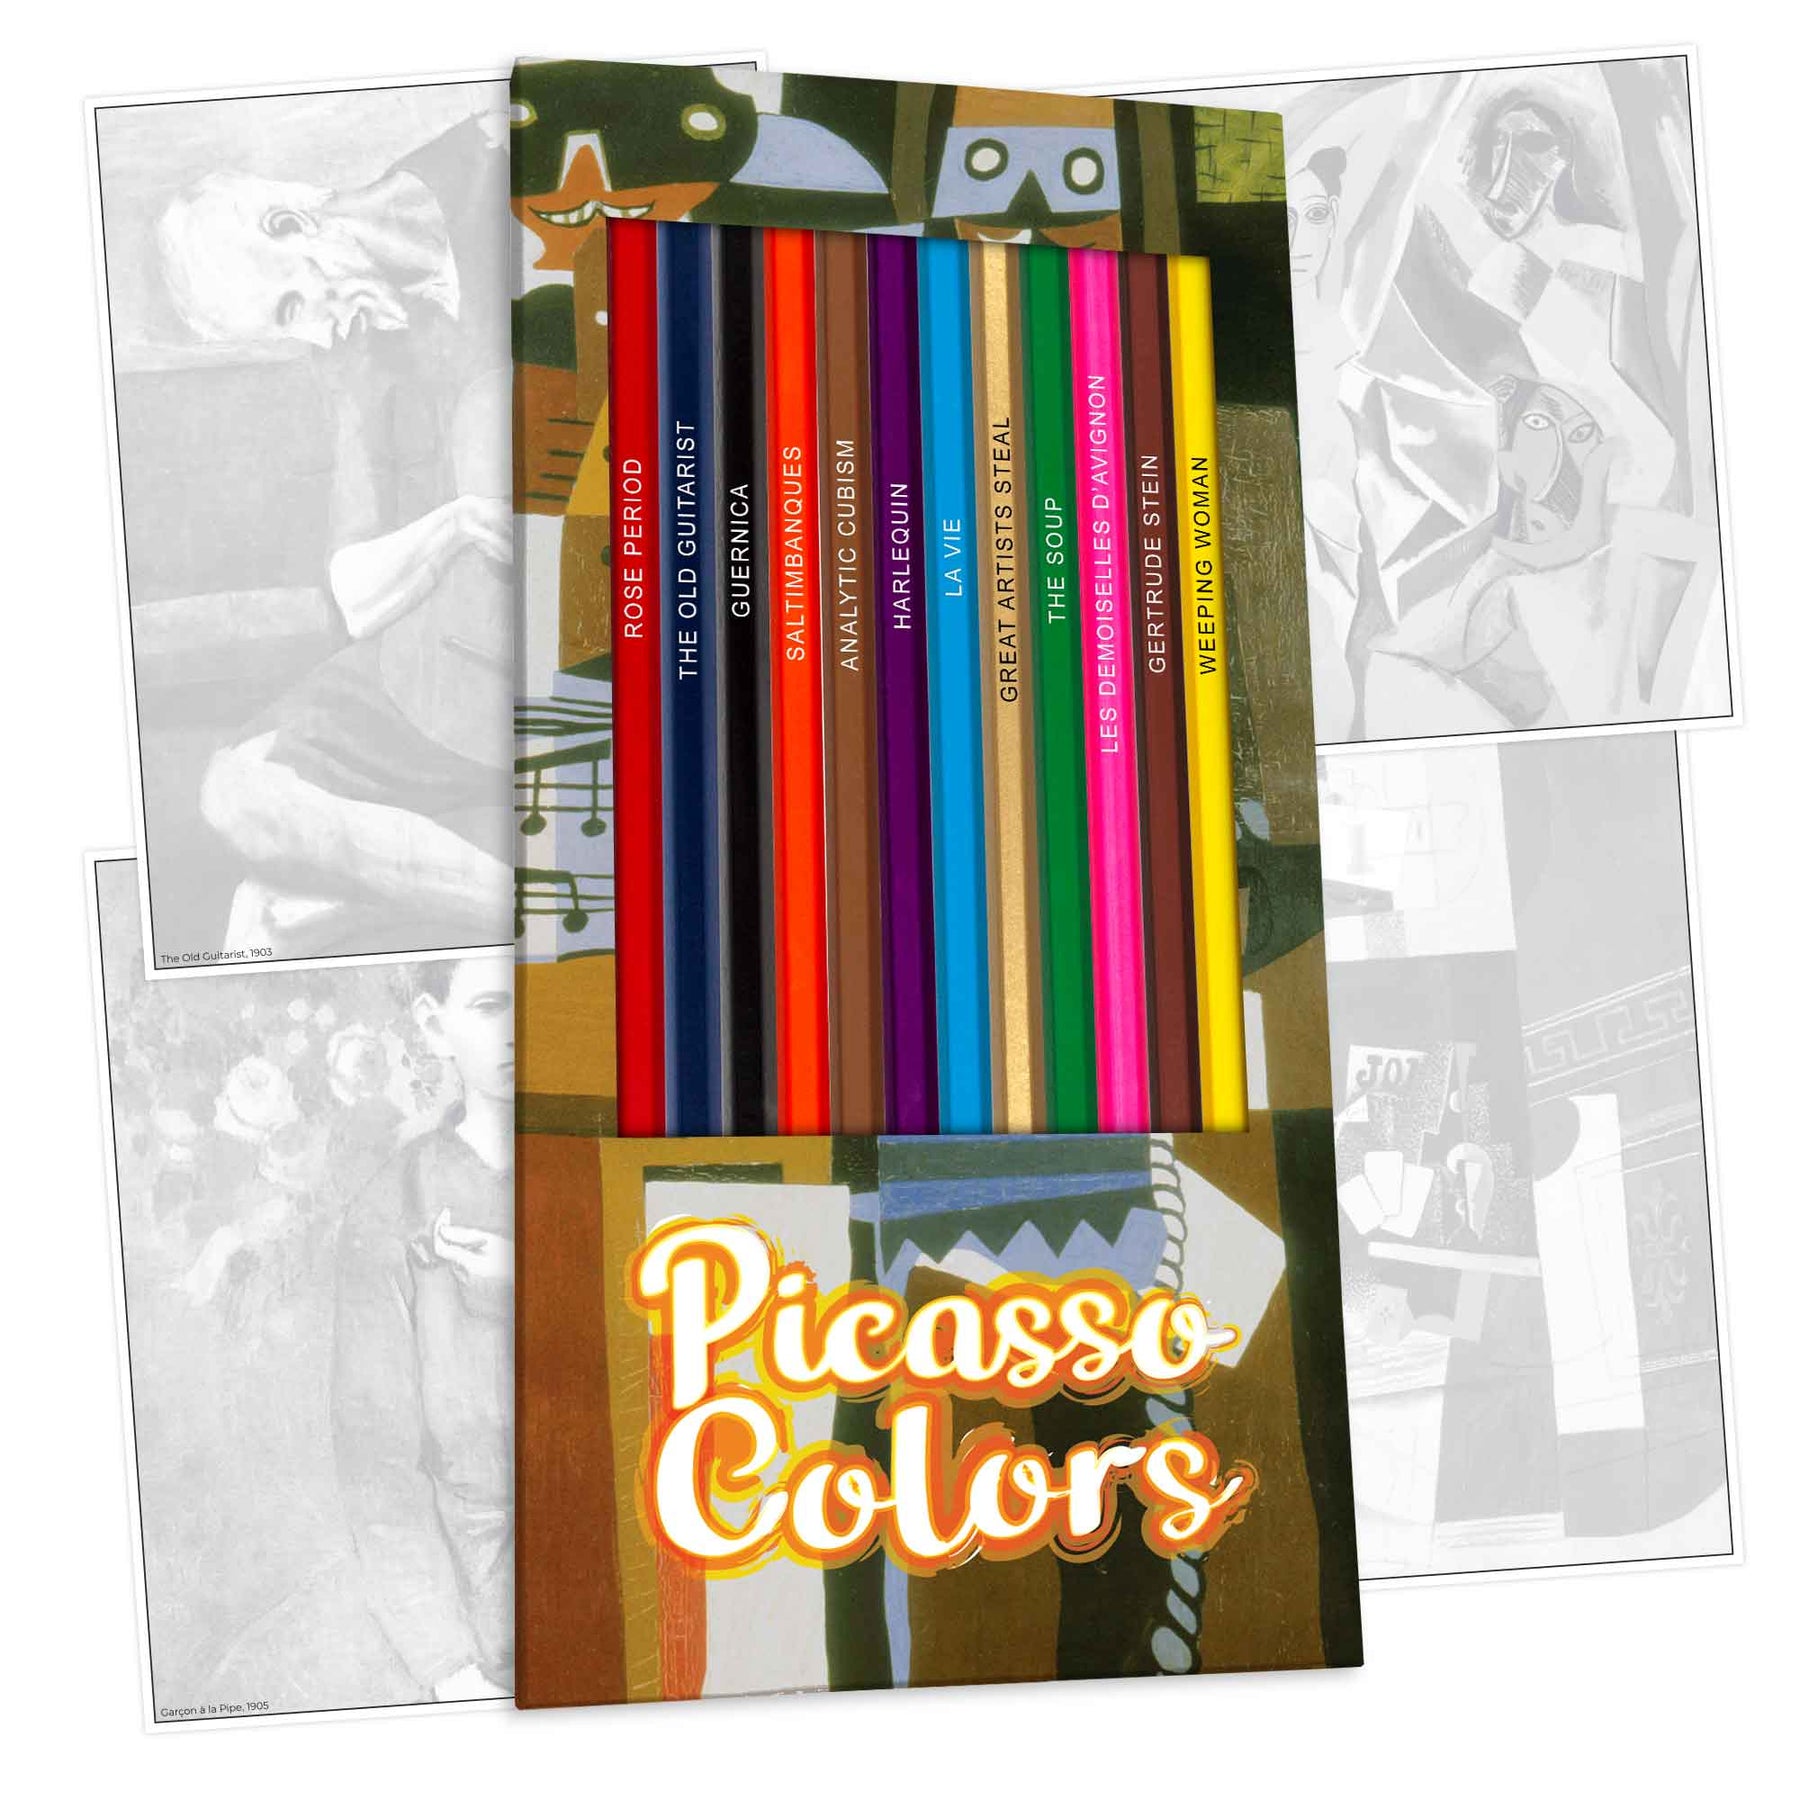 Prismacolor Scholar Art Pencil Sets